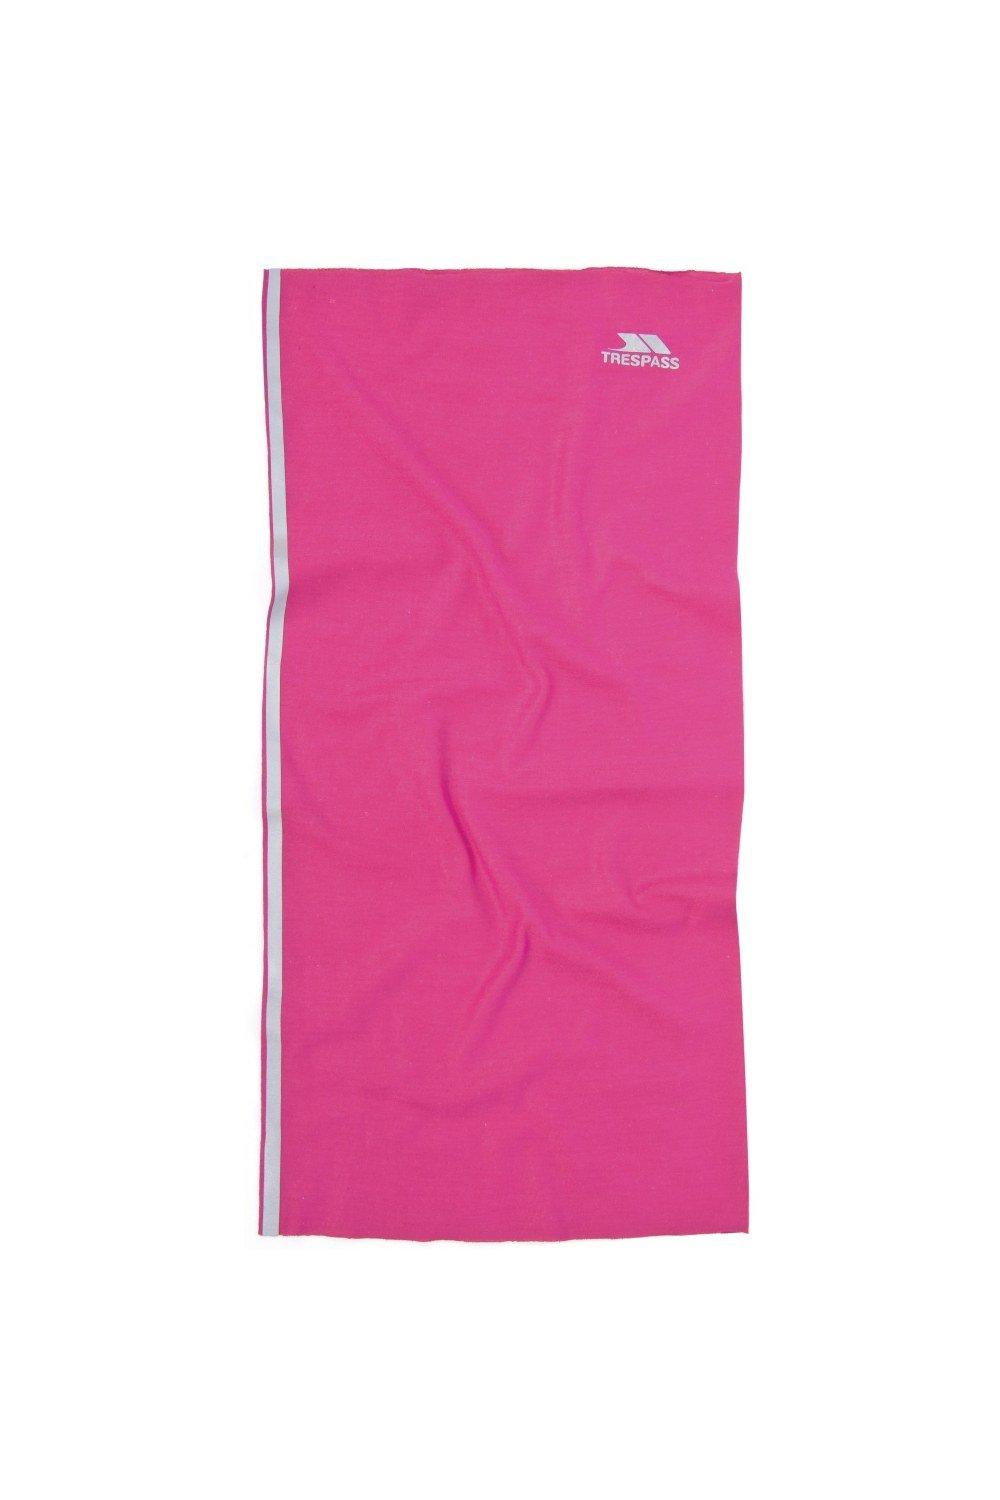 Многофункциональный шейный шарф Tattler Trespass, розовый как завязать шарф платок 23 способа